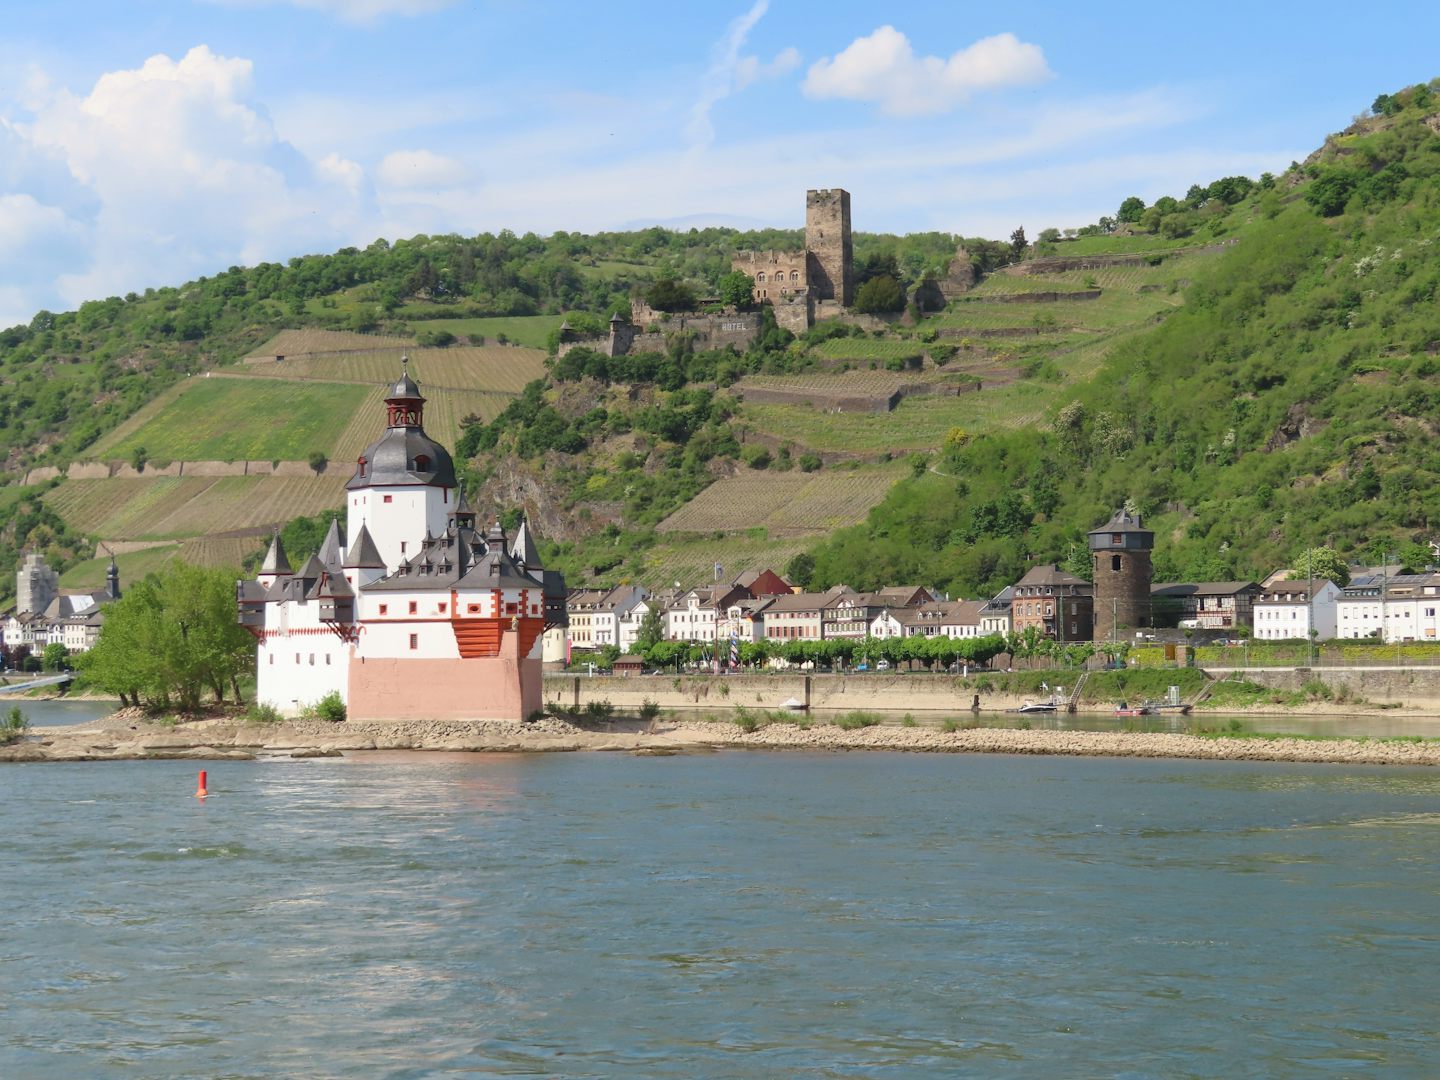 Pfalzgrafenstein Castle on the Rhine